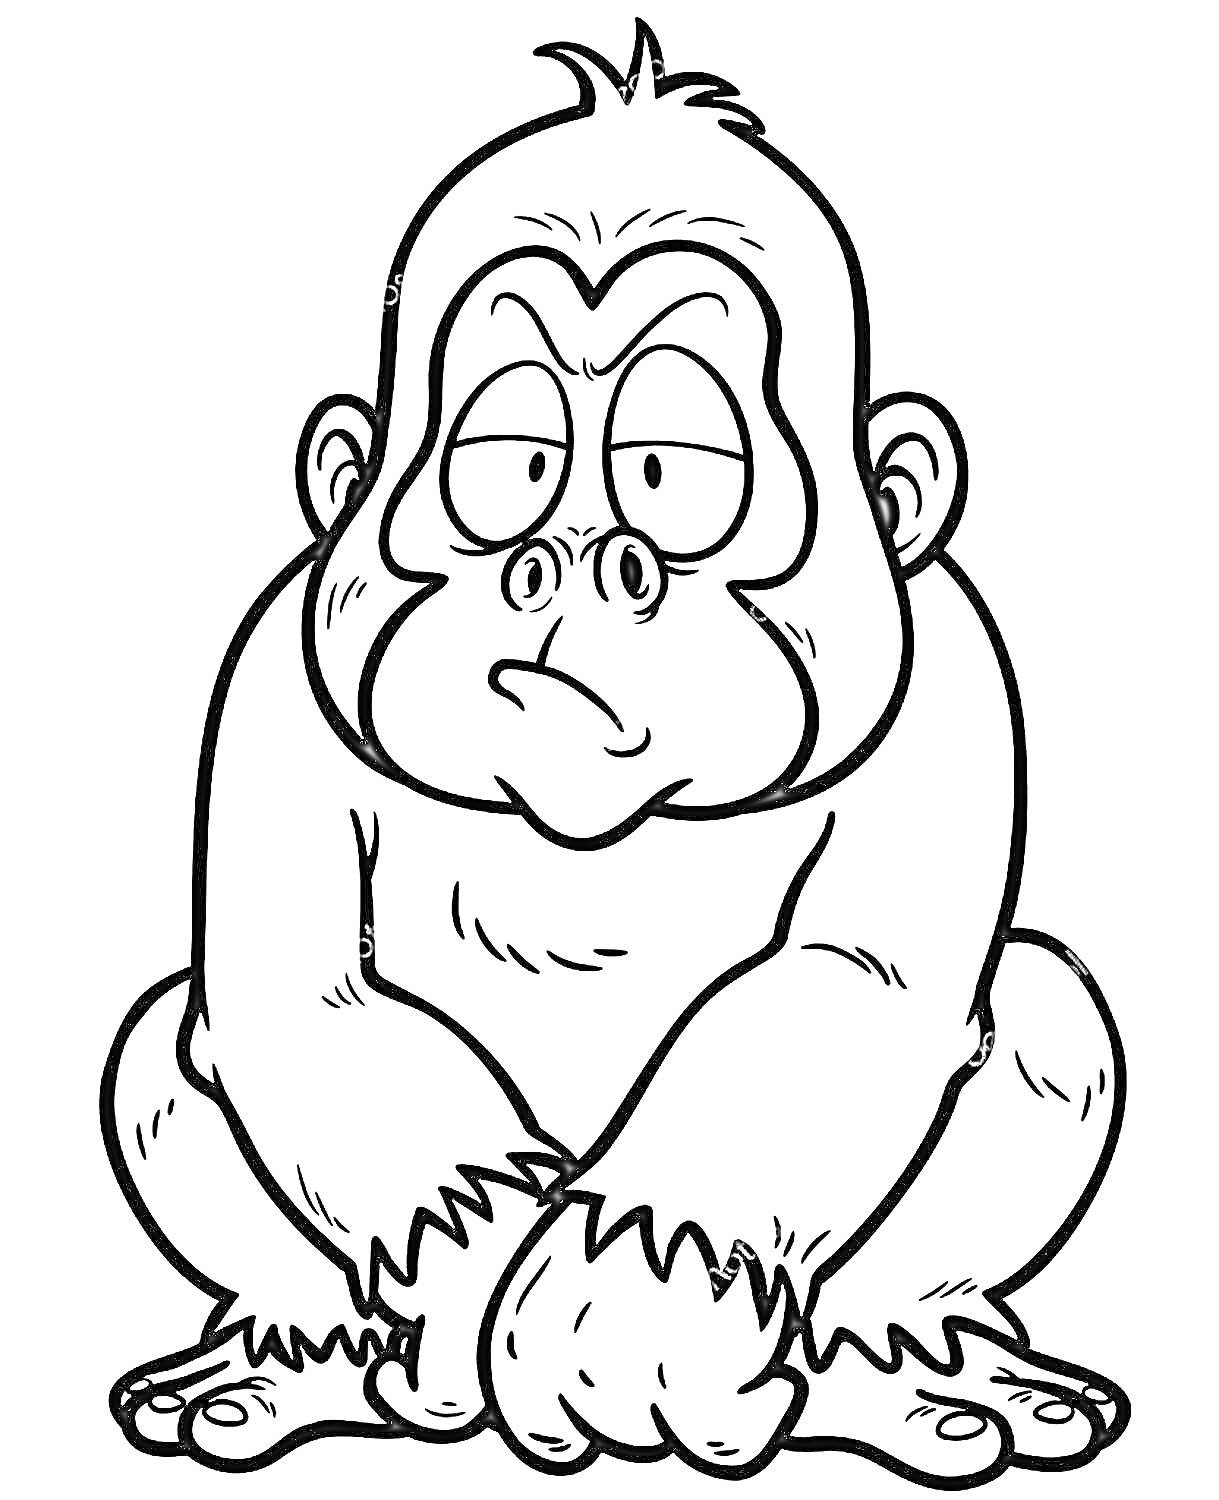 Раскраска Грустная горилла с выражением усталости и задумчивости, сидящая на корточках